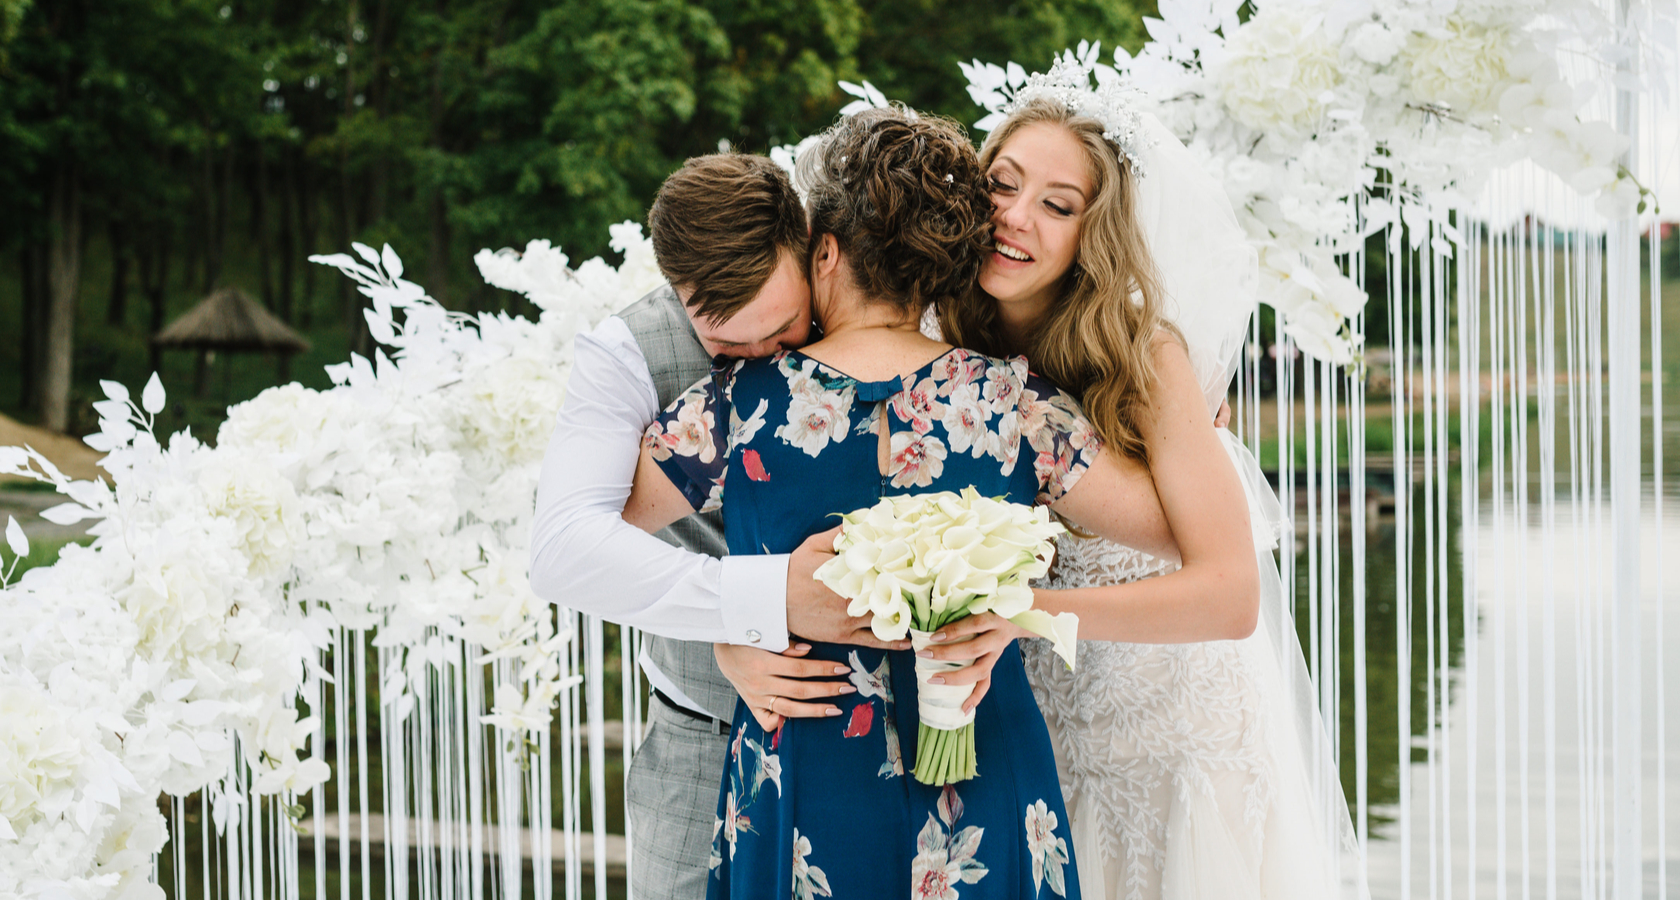 Тосты к свадьбе - Тосты о браке, семье и любви